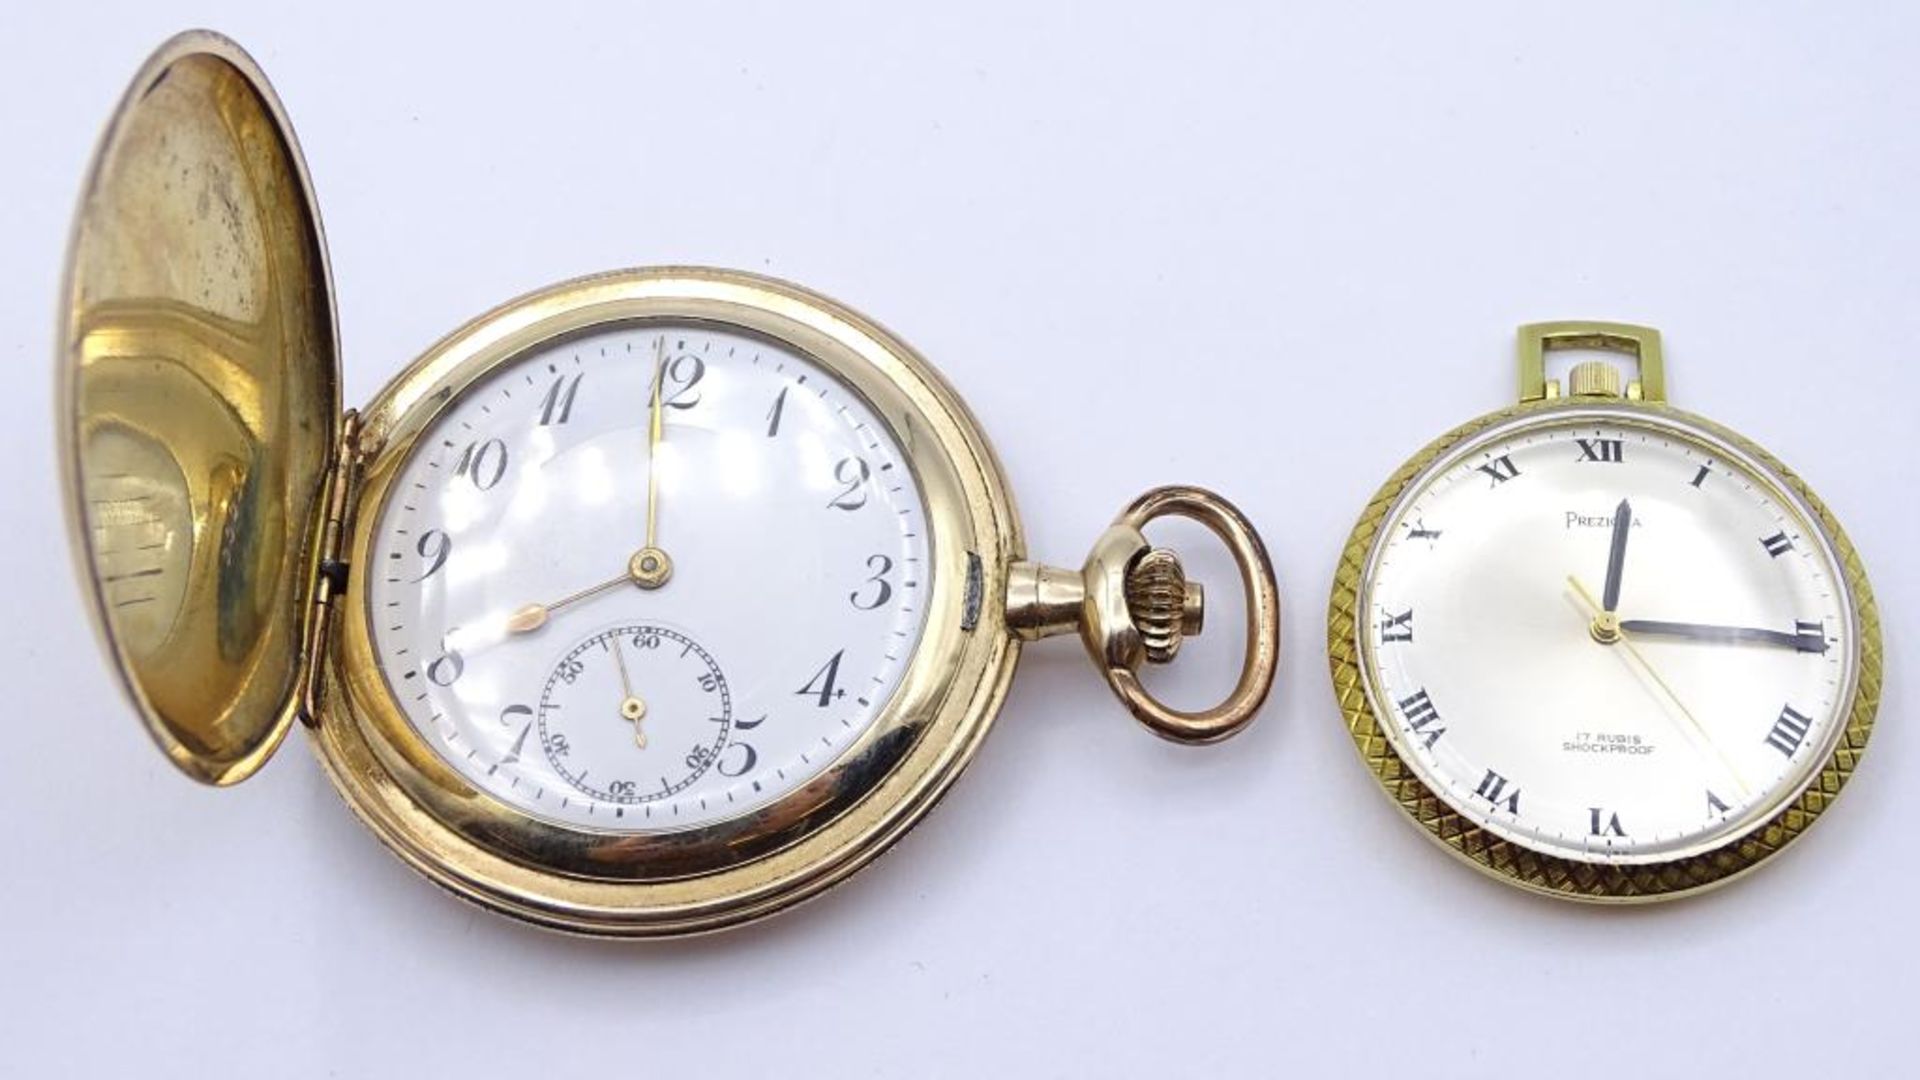 2 Taschenuhren, jeweils mit weißem Ziffernblatt, D. 54 mm und 40 mm, beide laufen an, 117,2